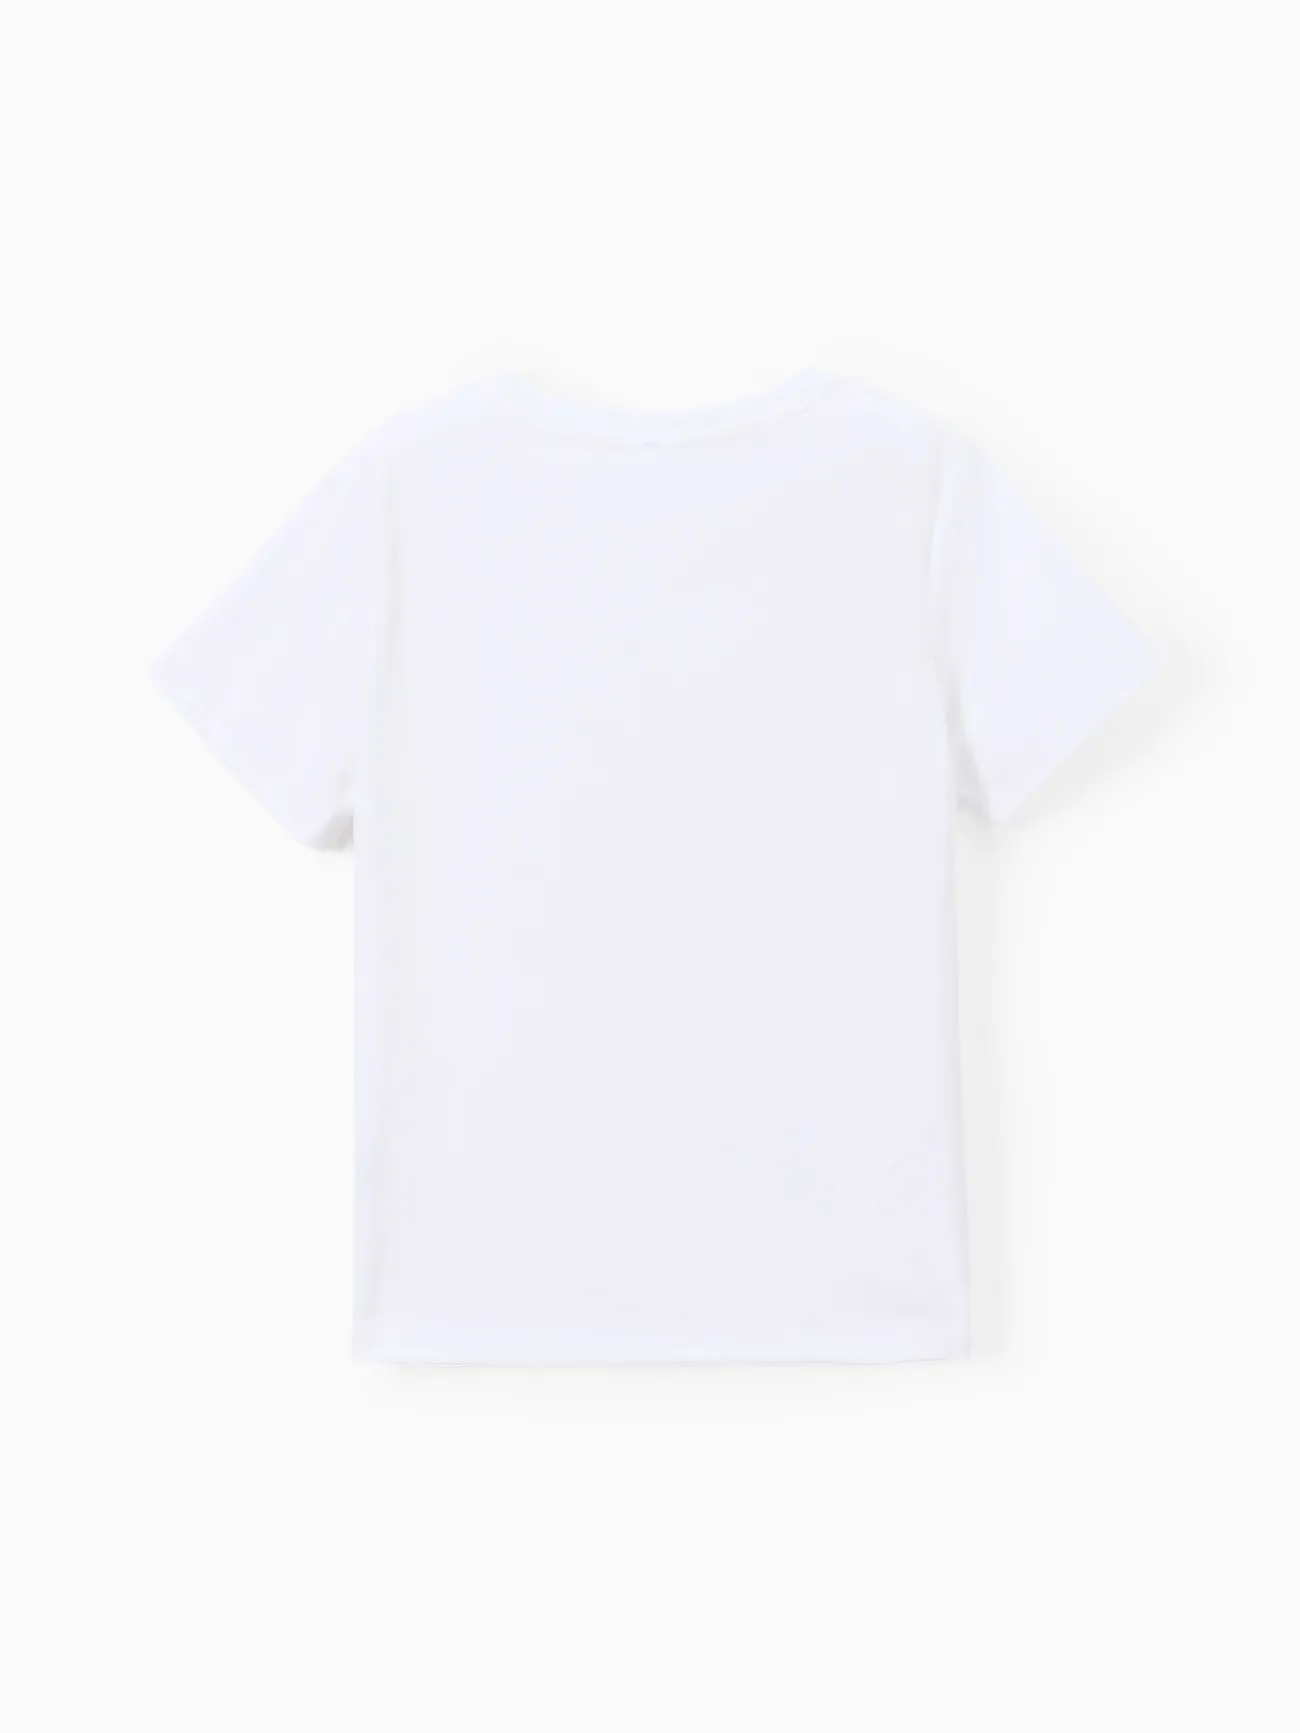 Go-Neat repelente de água e camisetas resistentes a manchas para crianças Branco big image 1